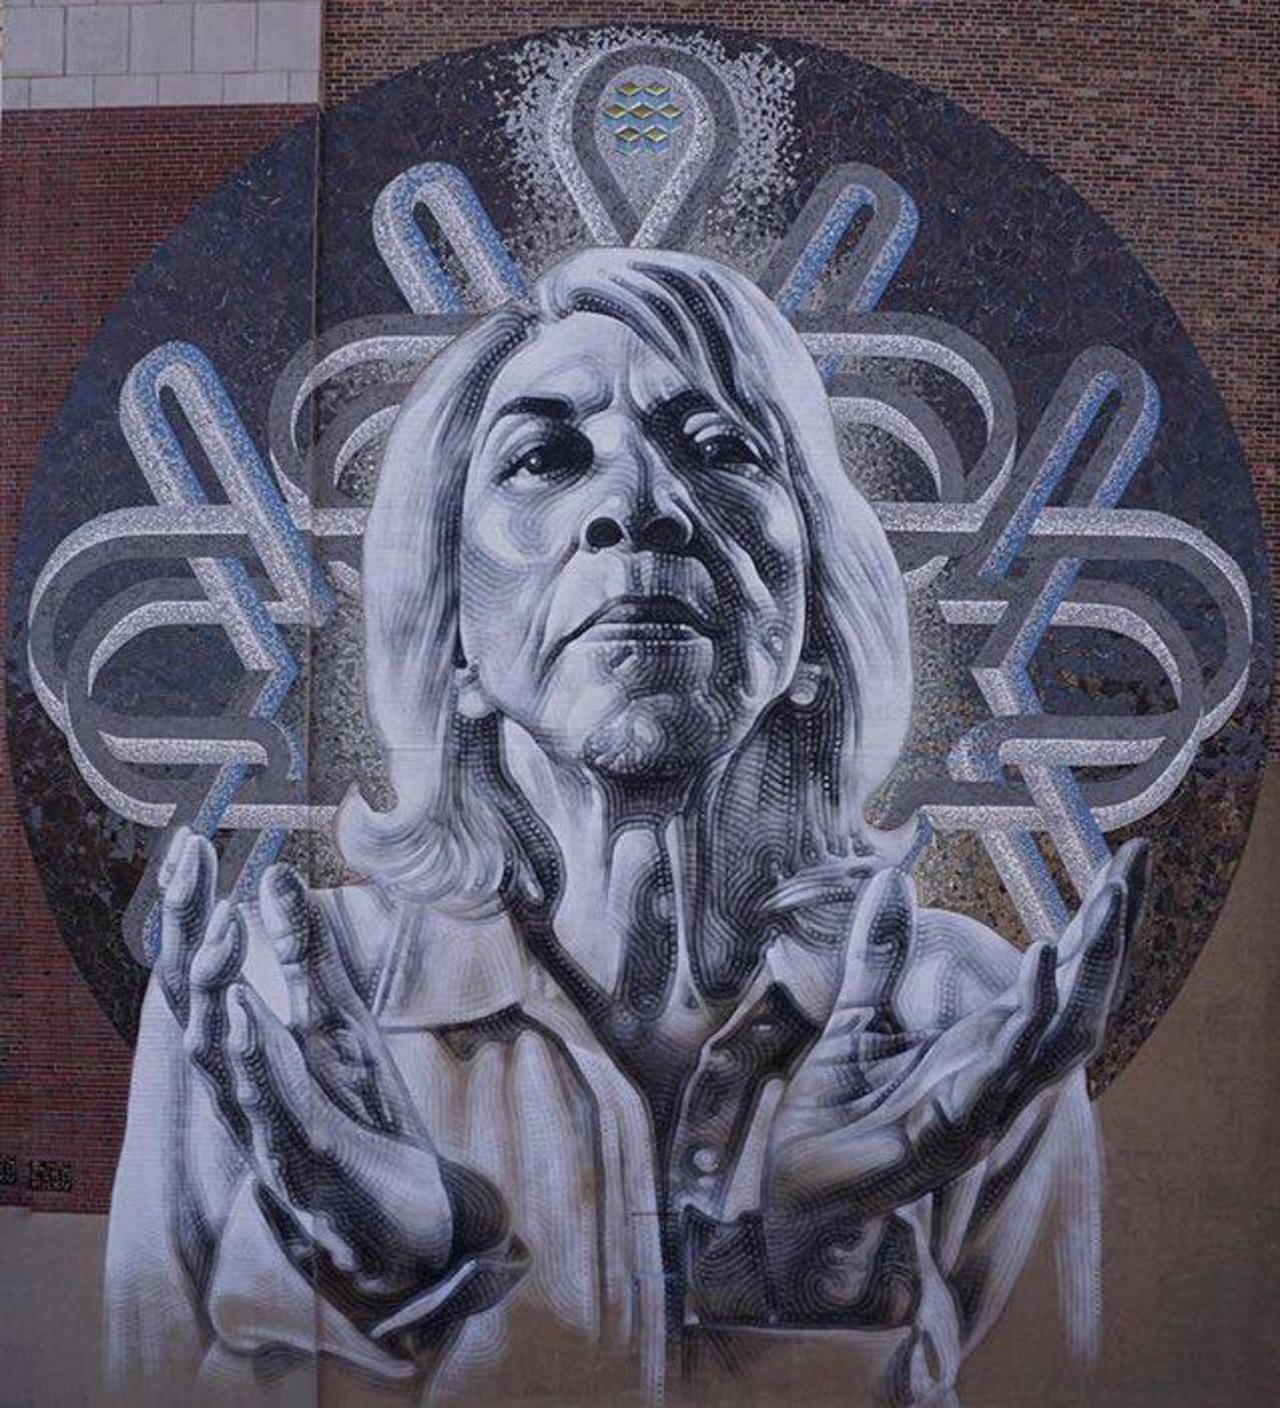 New Street Art by El Mac 

#art #graffiti #mural #streetart https://t.co/N21lagEQq1